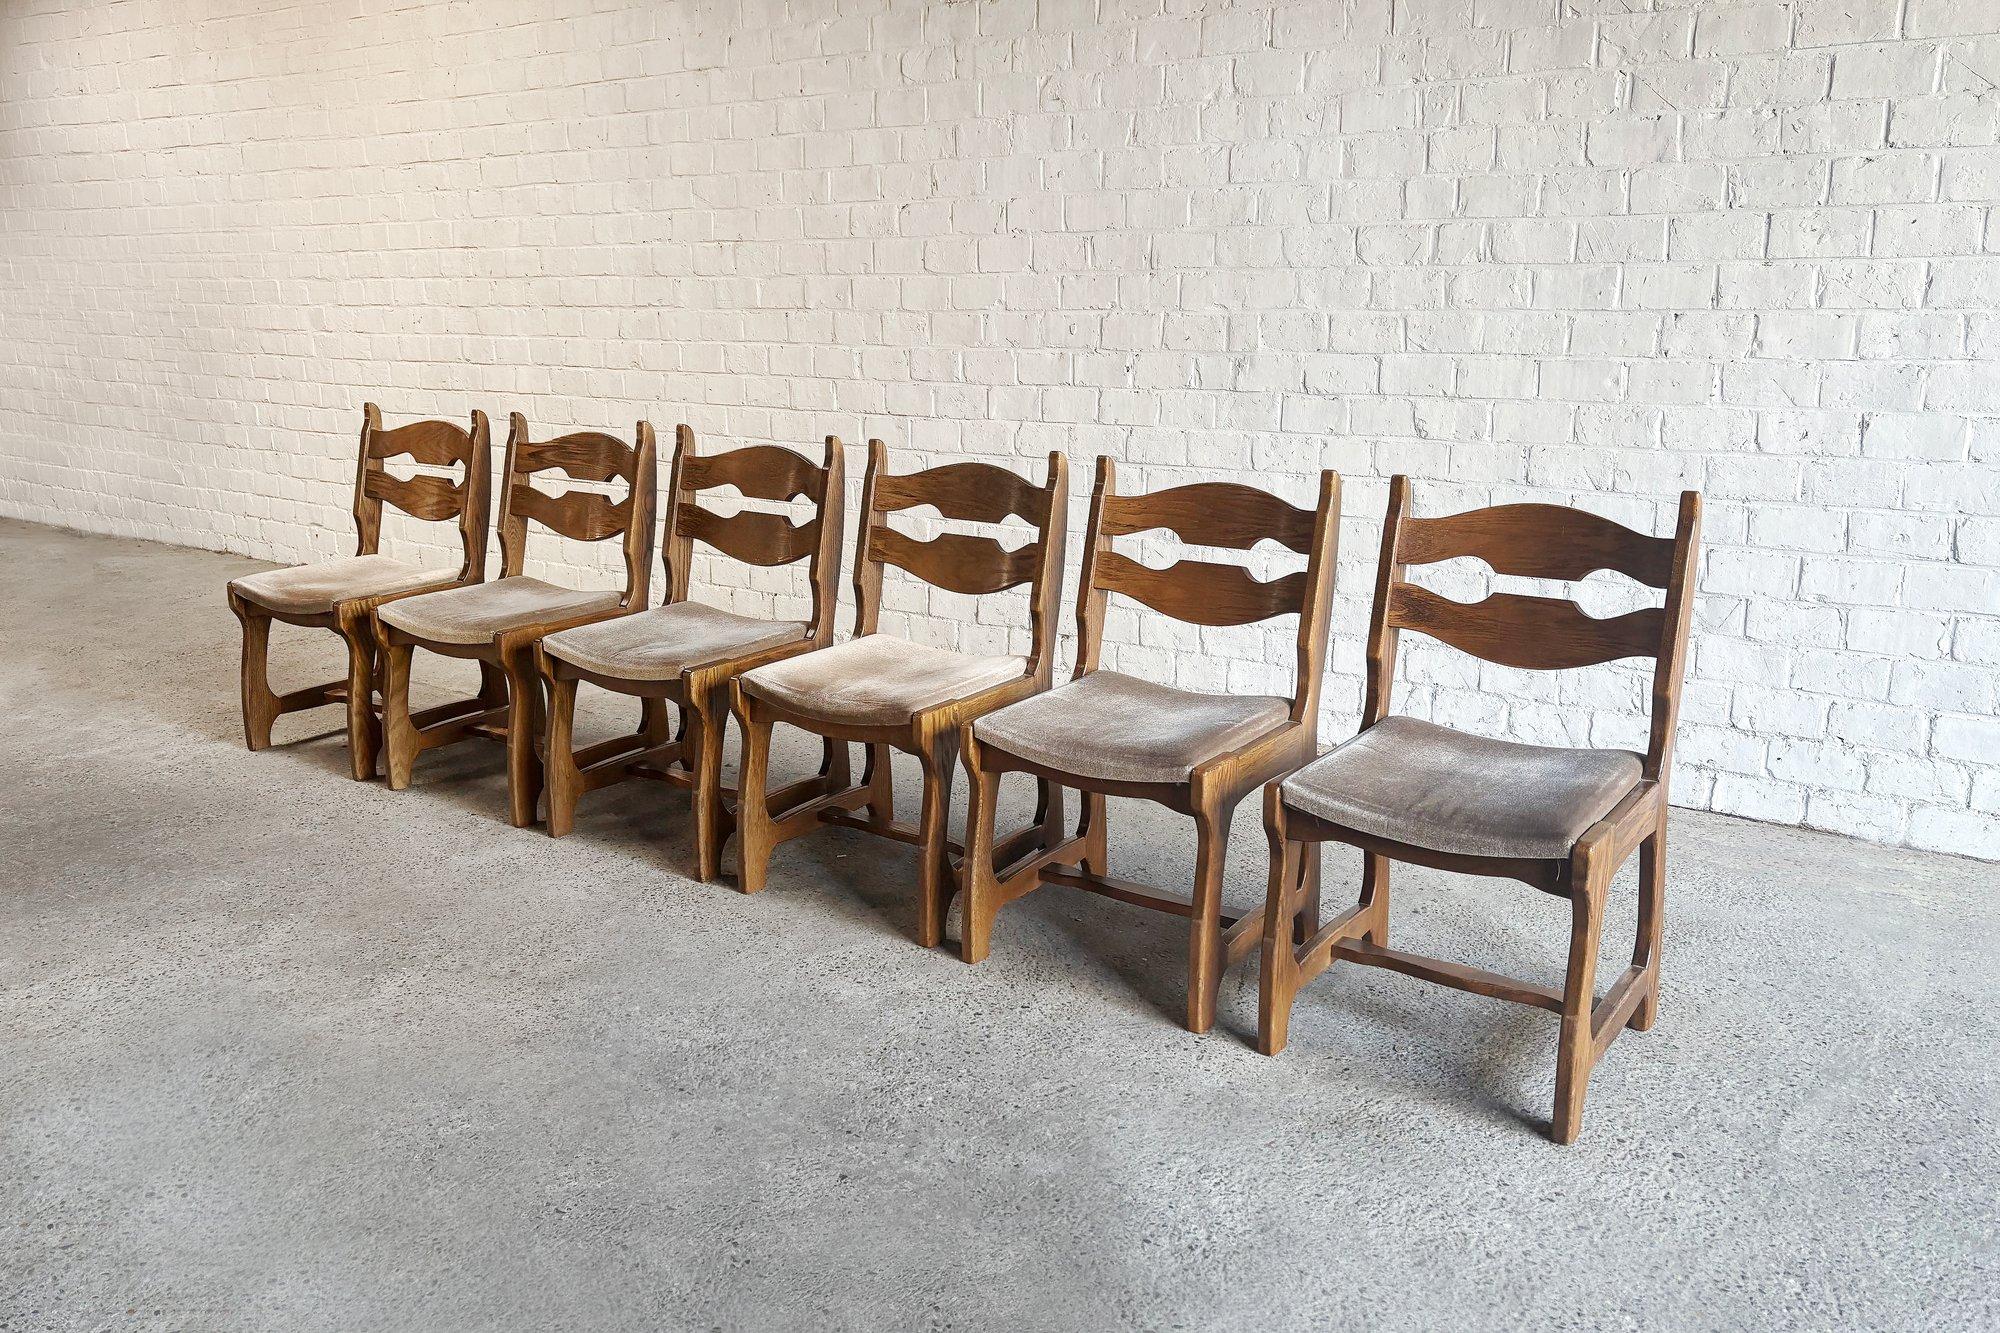 Magnifique et inhabituel ensemble de 6 chaises en chêne massif conçues par Guillerme et Chambron pour Votre Maison, vers 1950. Sièges en velours beige d'origine. Ces chaises ont un aspect brutal et organique à la fois.